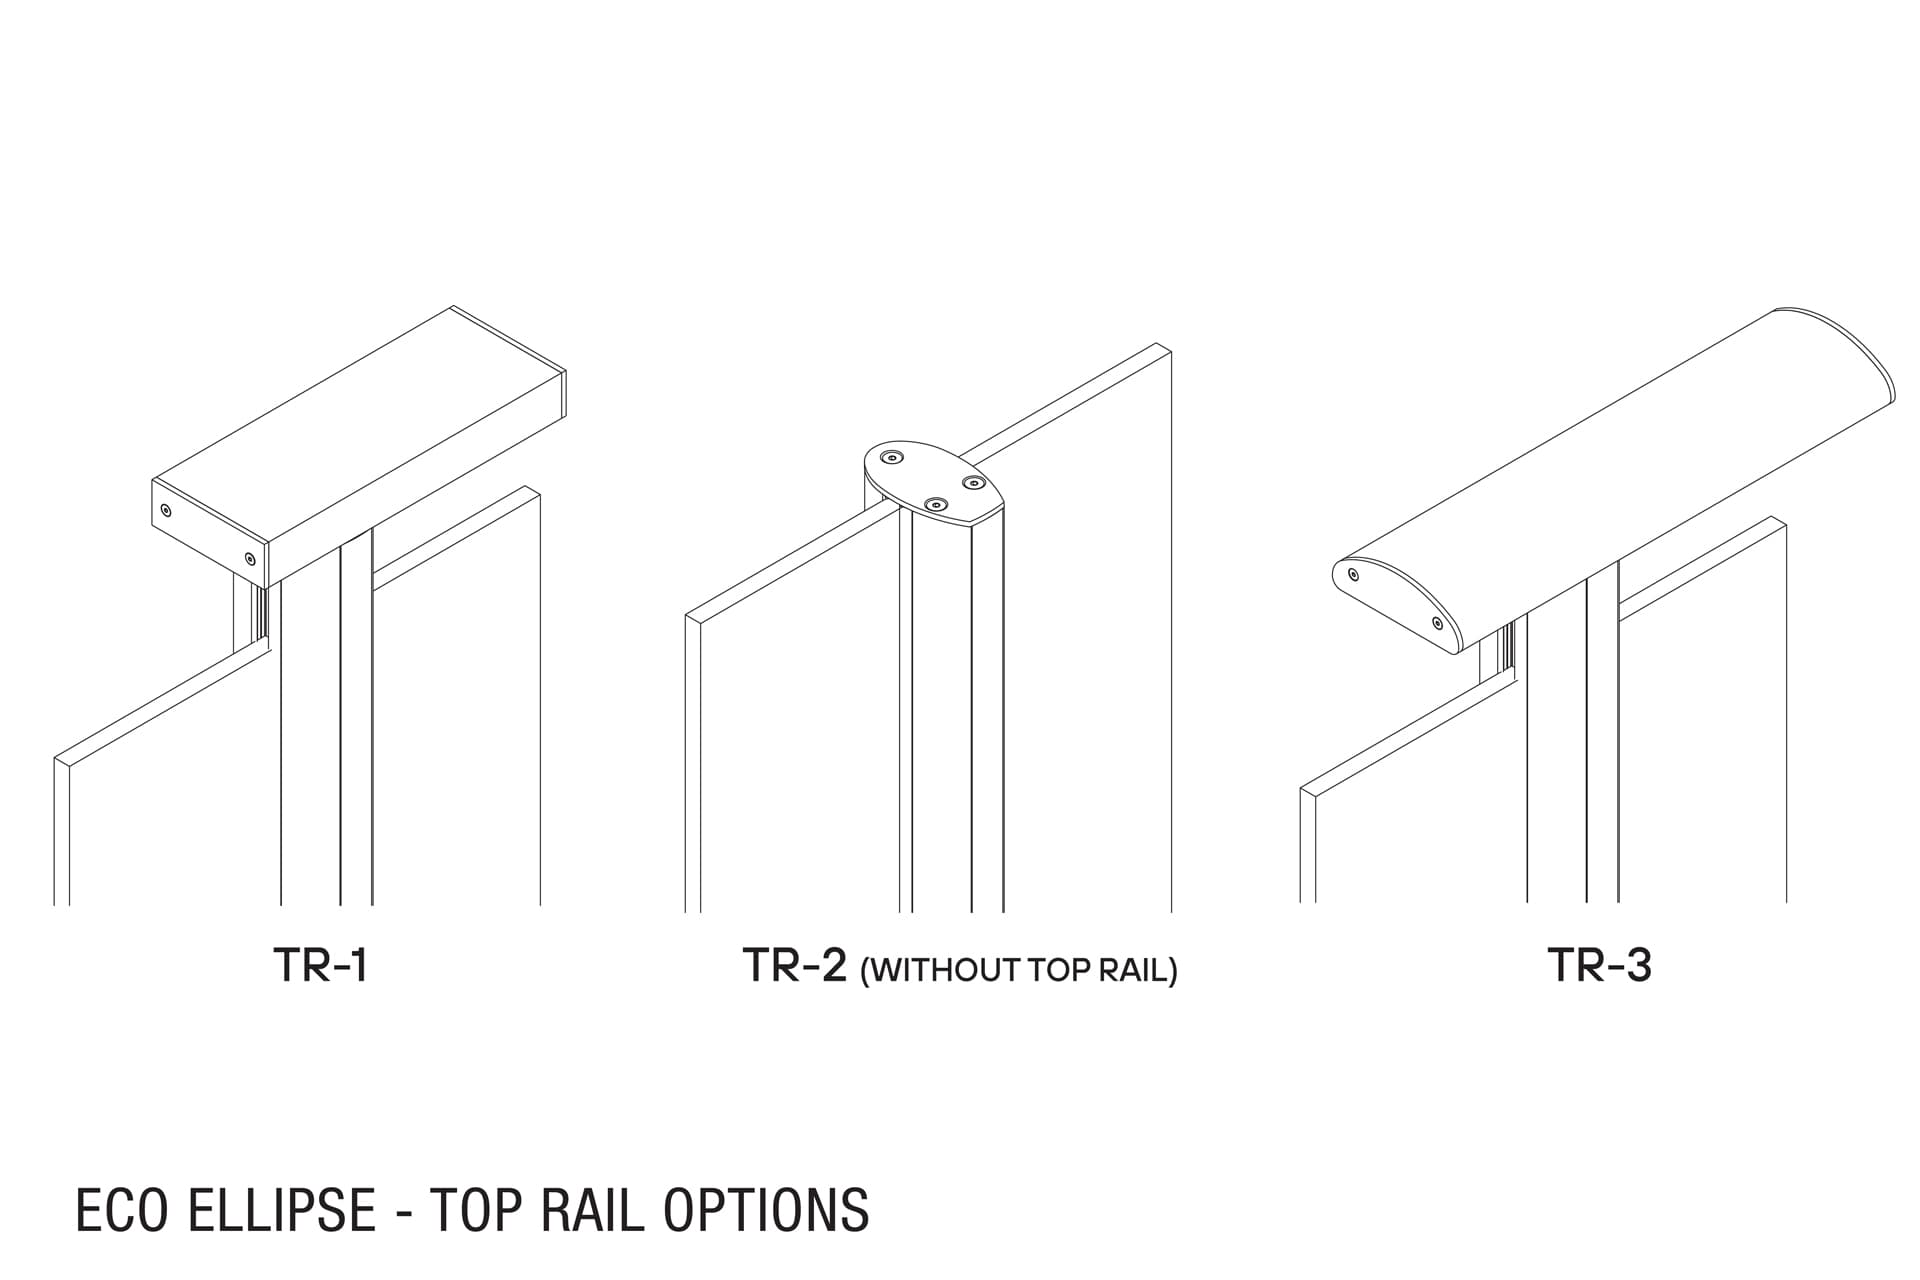 Viva eco ellipse top rail options web